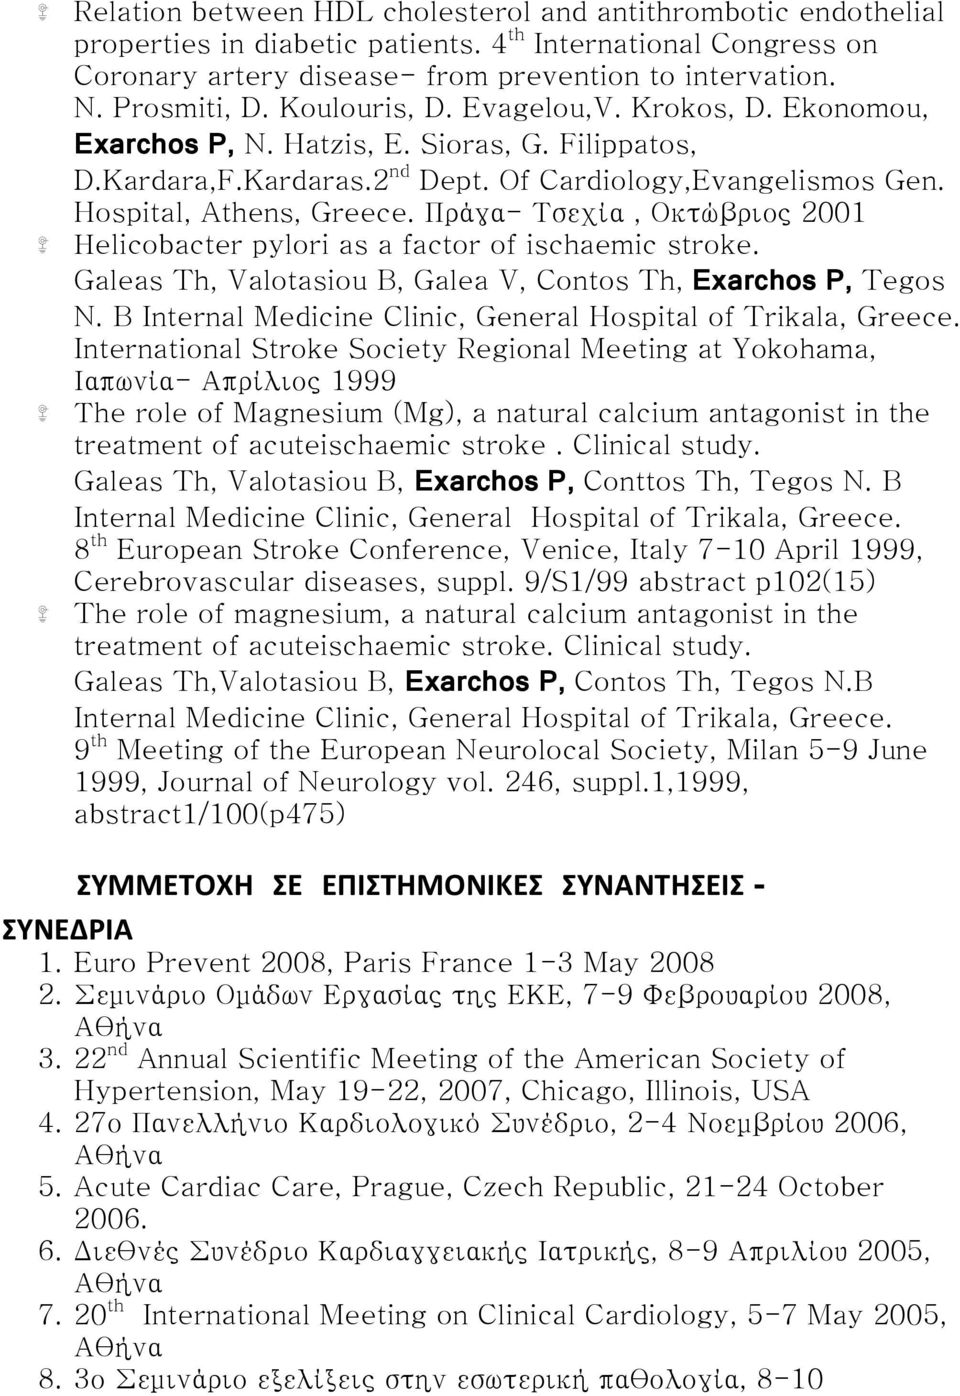 Πράγα- Τσεχία, Οκτώβριος 2001 Ηelicobacter pylori as a factor of ischaemic stroke. Galeas Th, Valotasiou B, Galea V, Contos Th, Exarchos P, Tegos N.